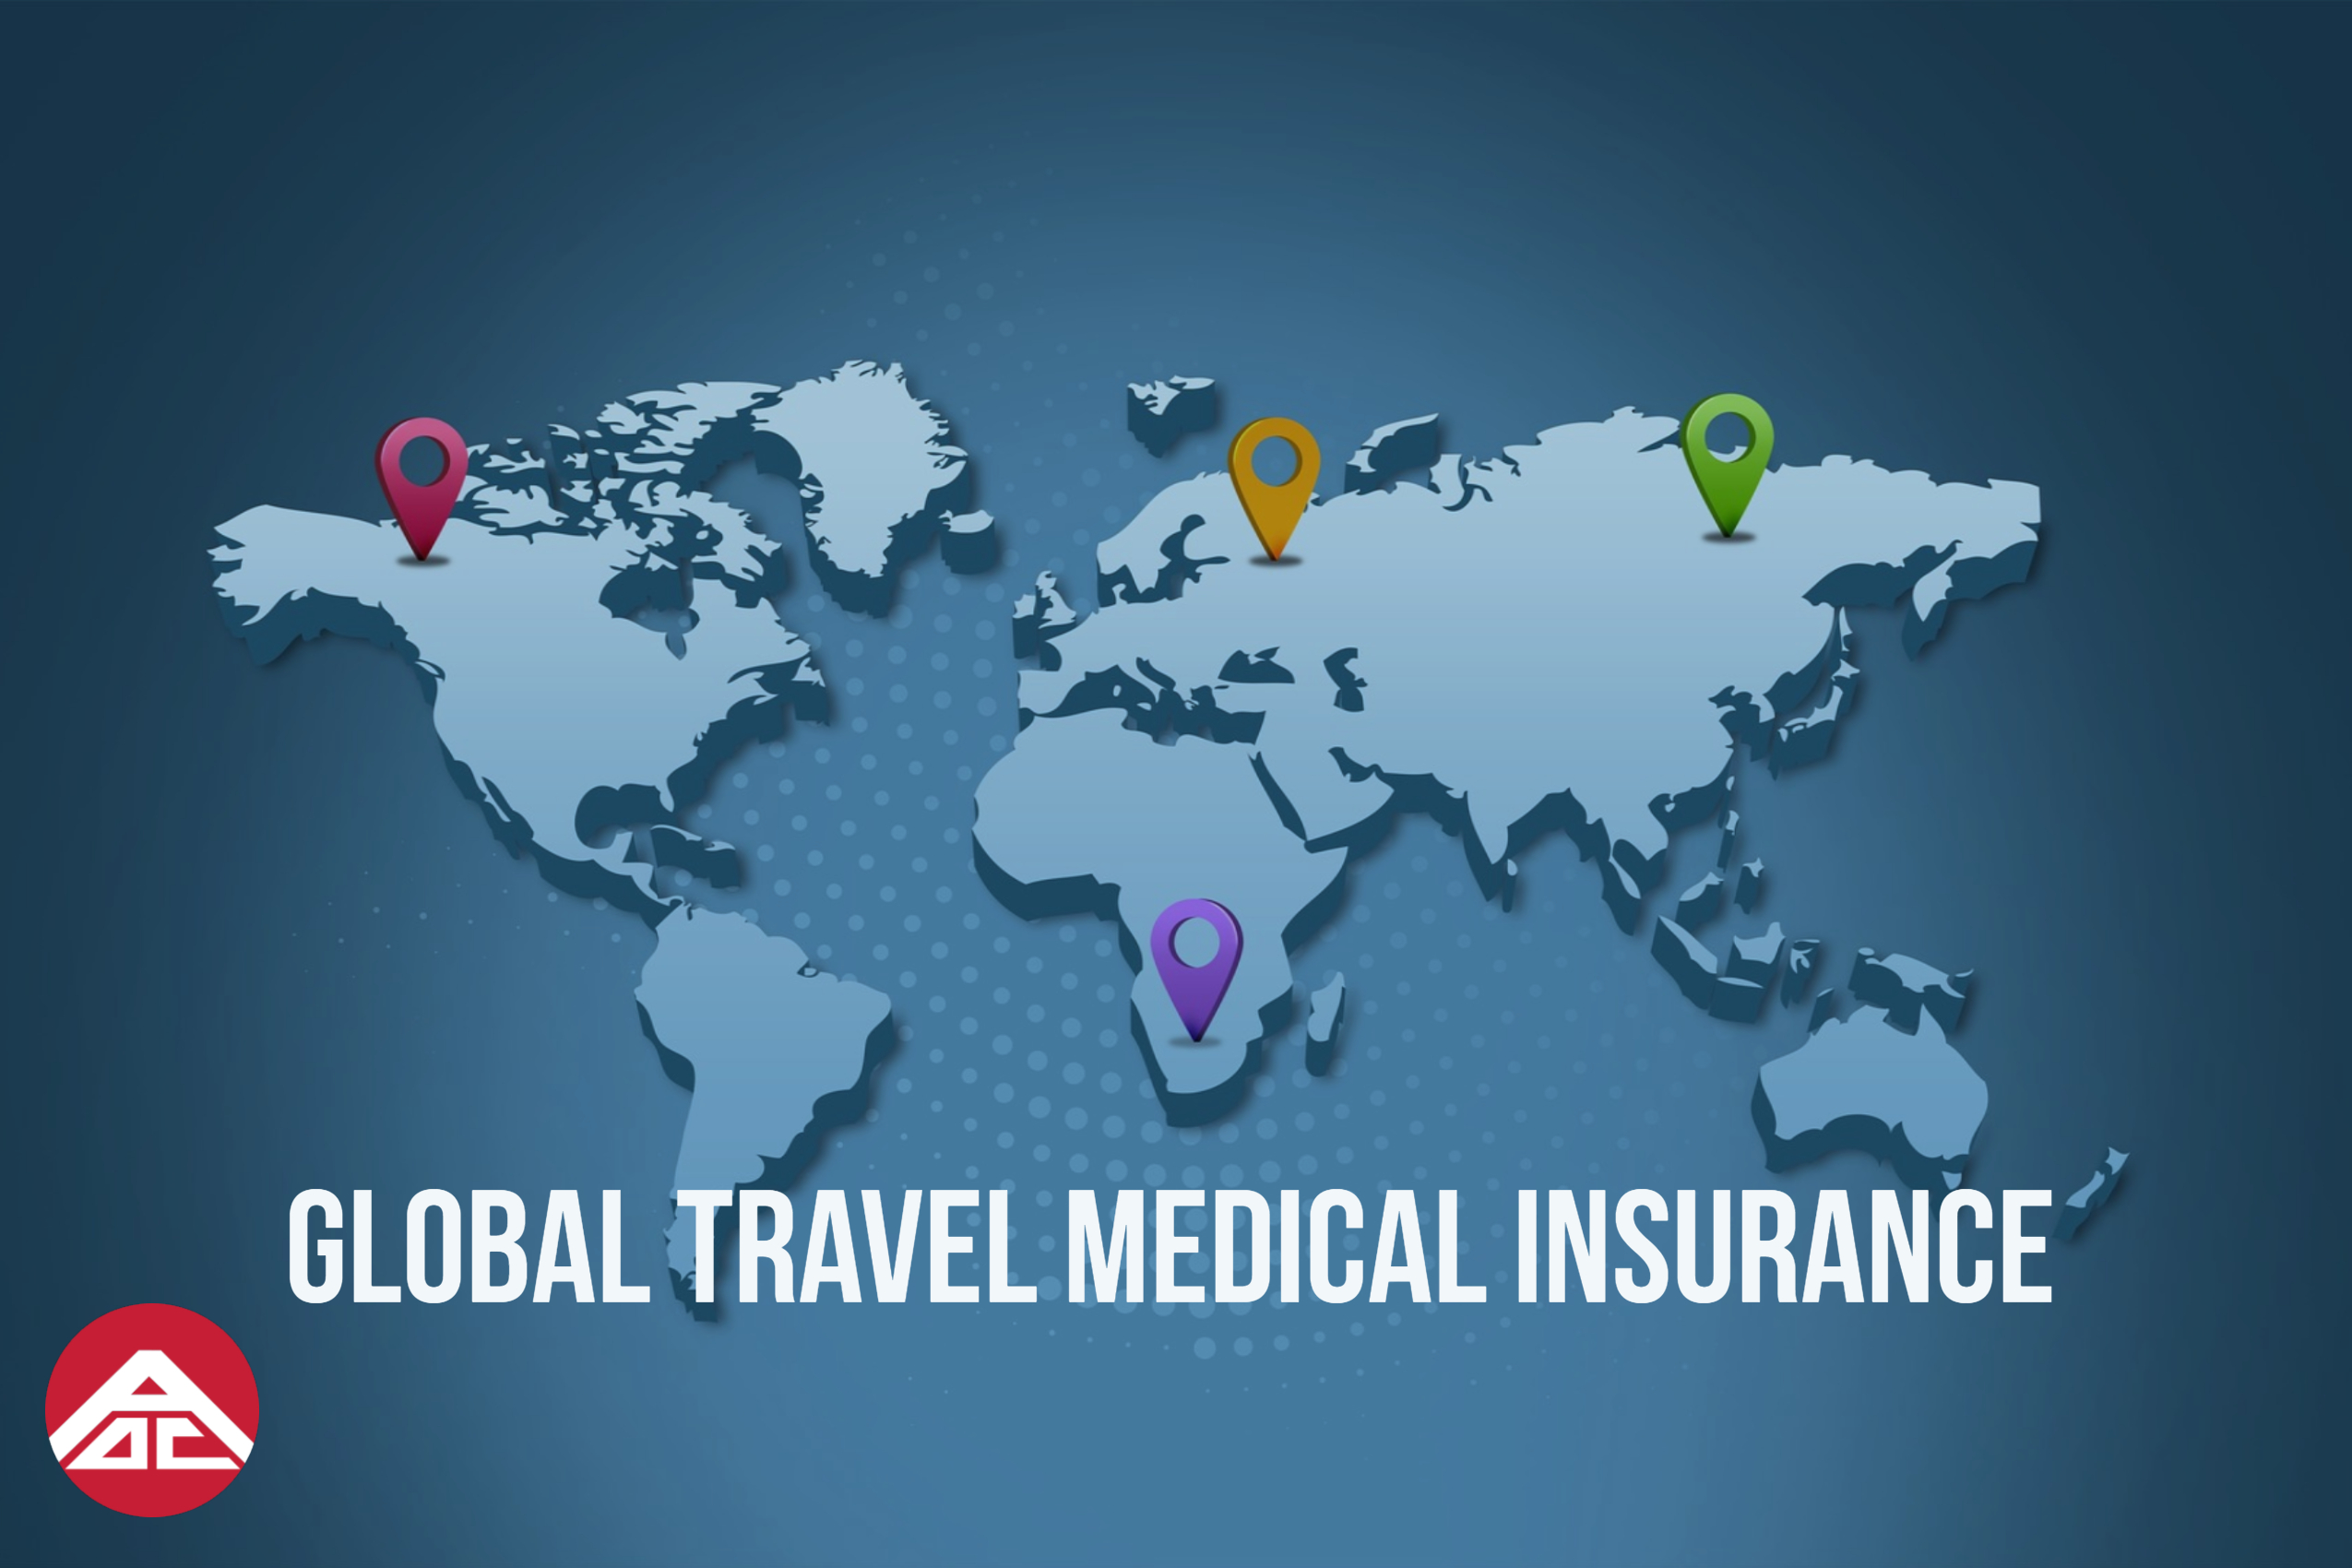 Aoc_insurance_global_travel_medical_insurance.jpg